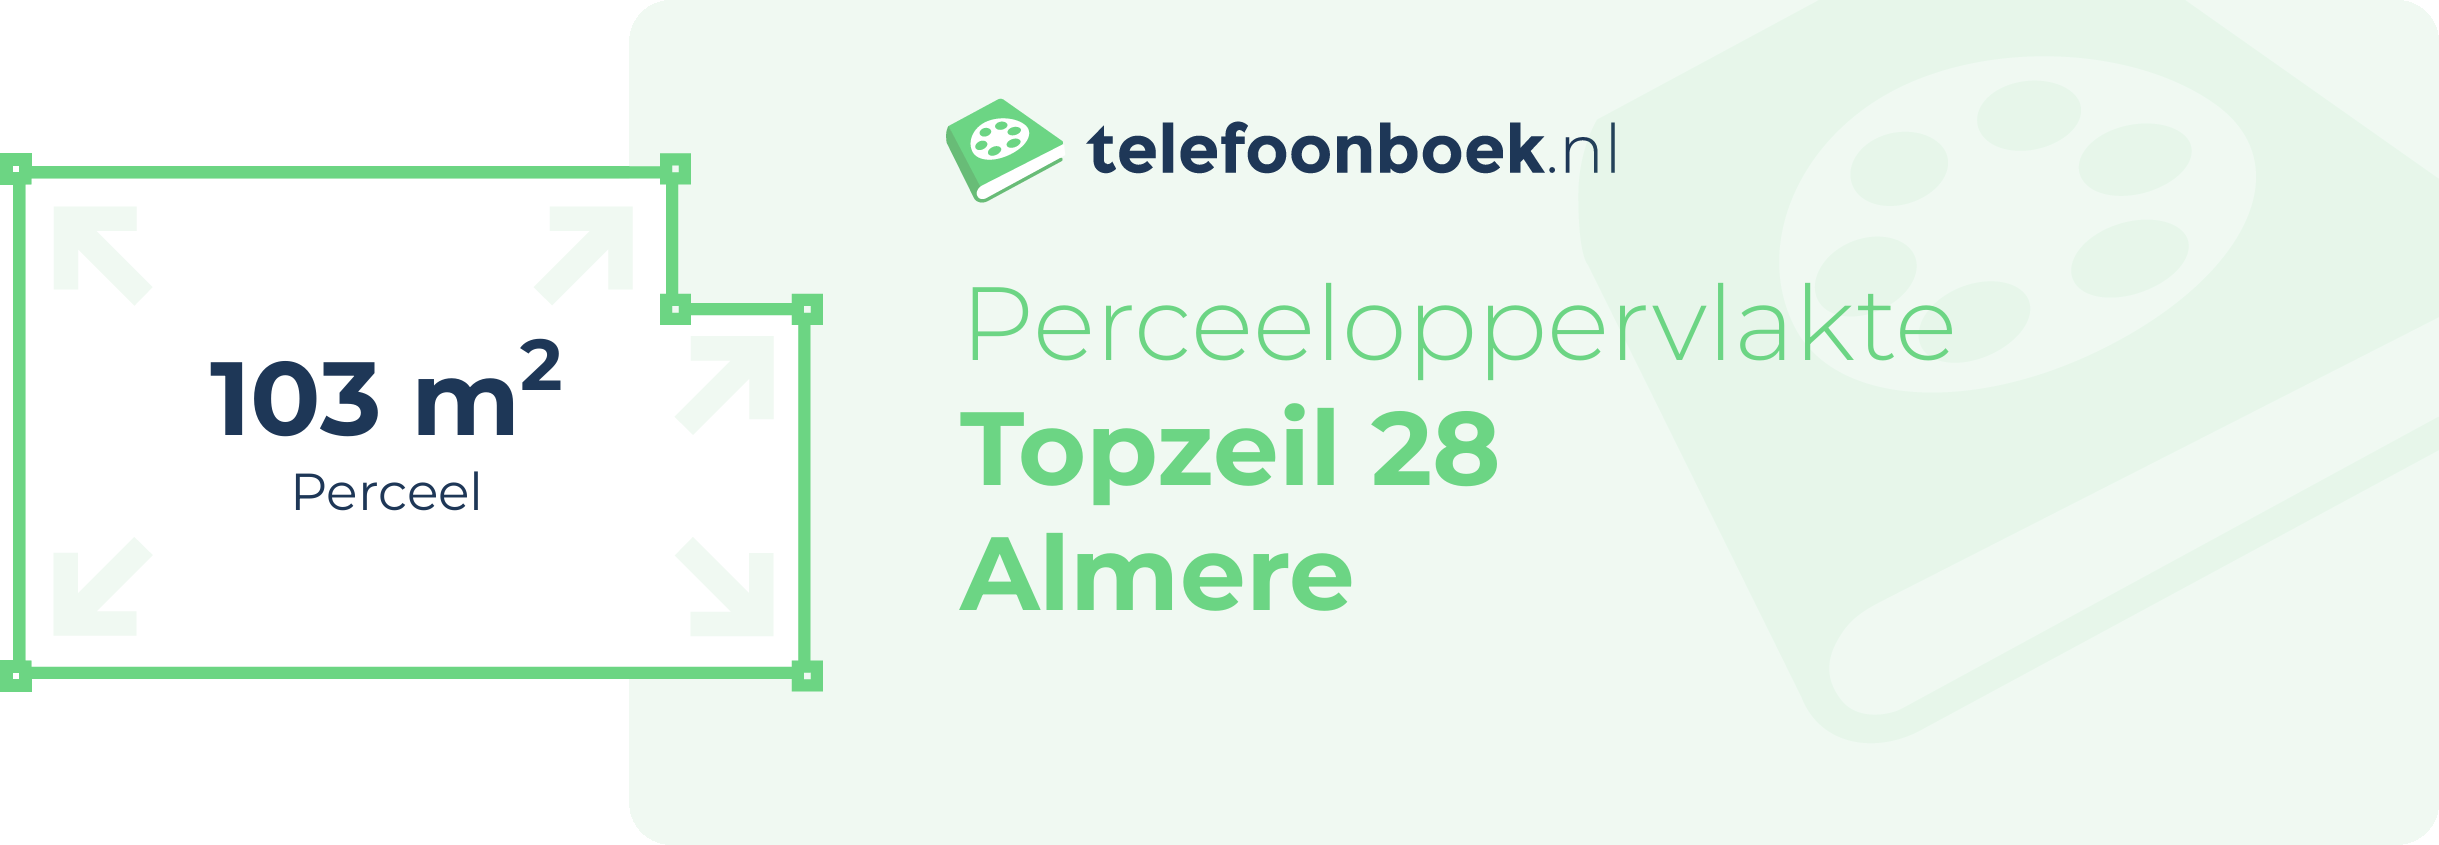 Perceeloppervlakte Topzeil 28 Almere